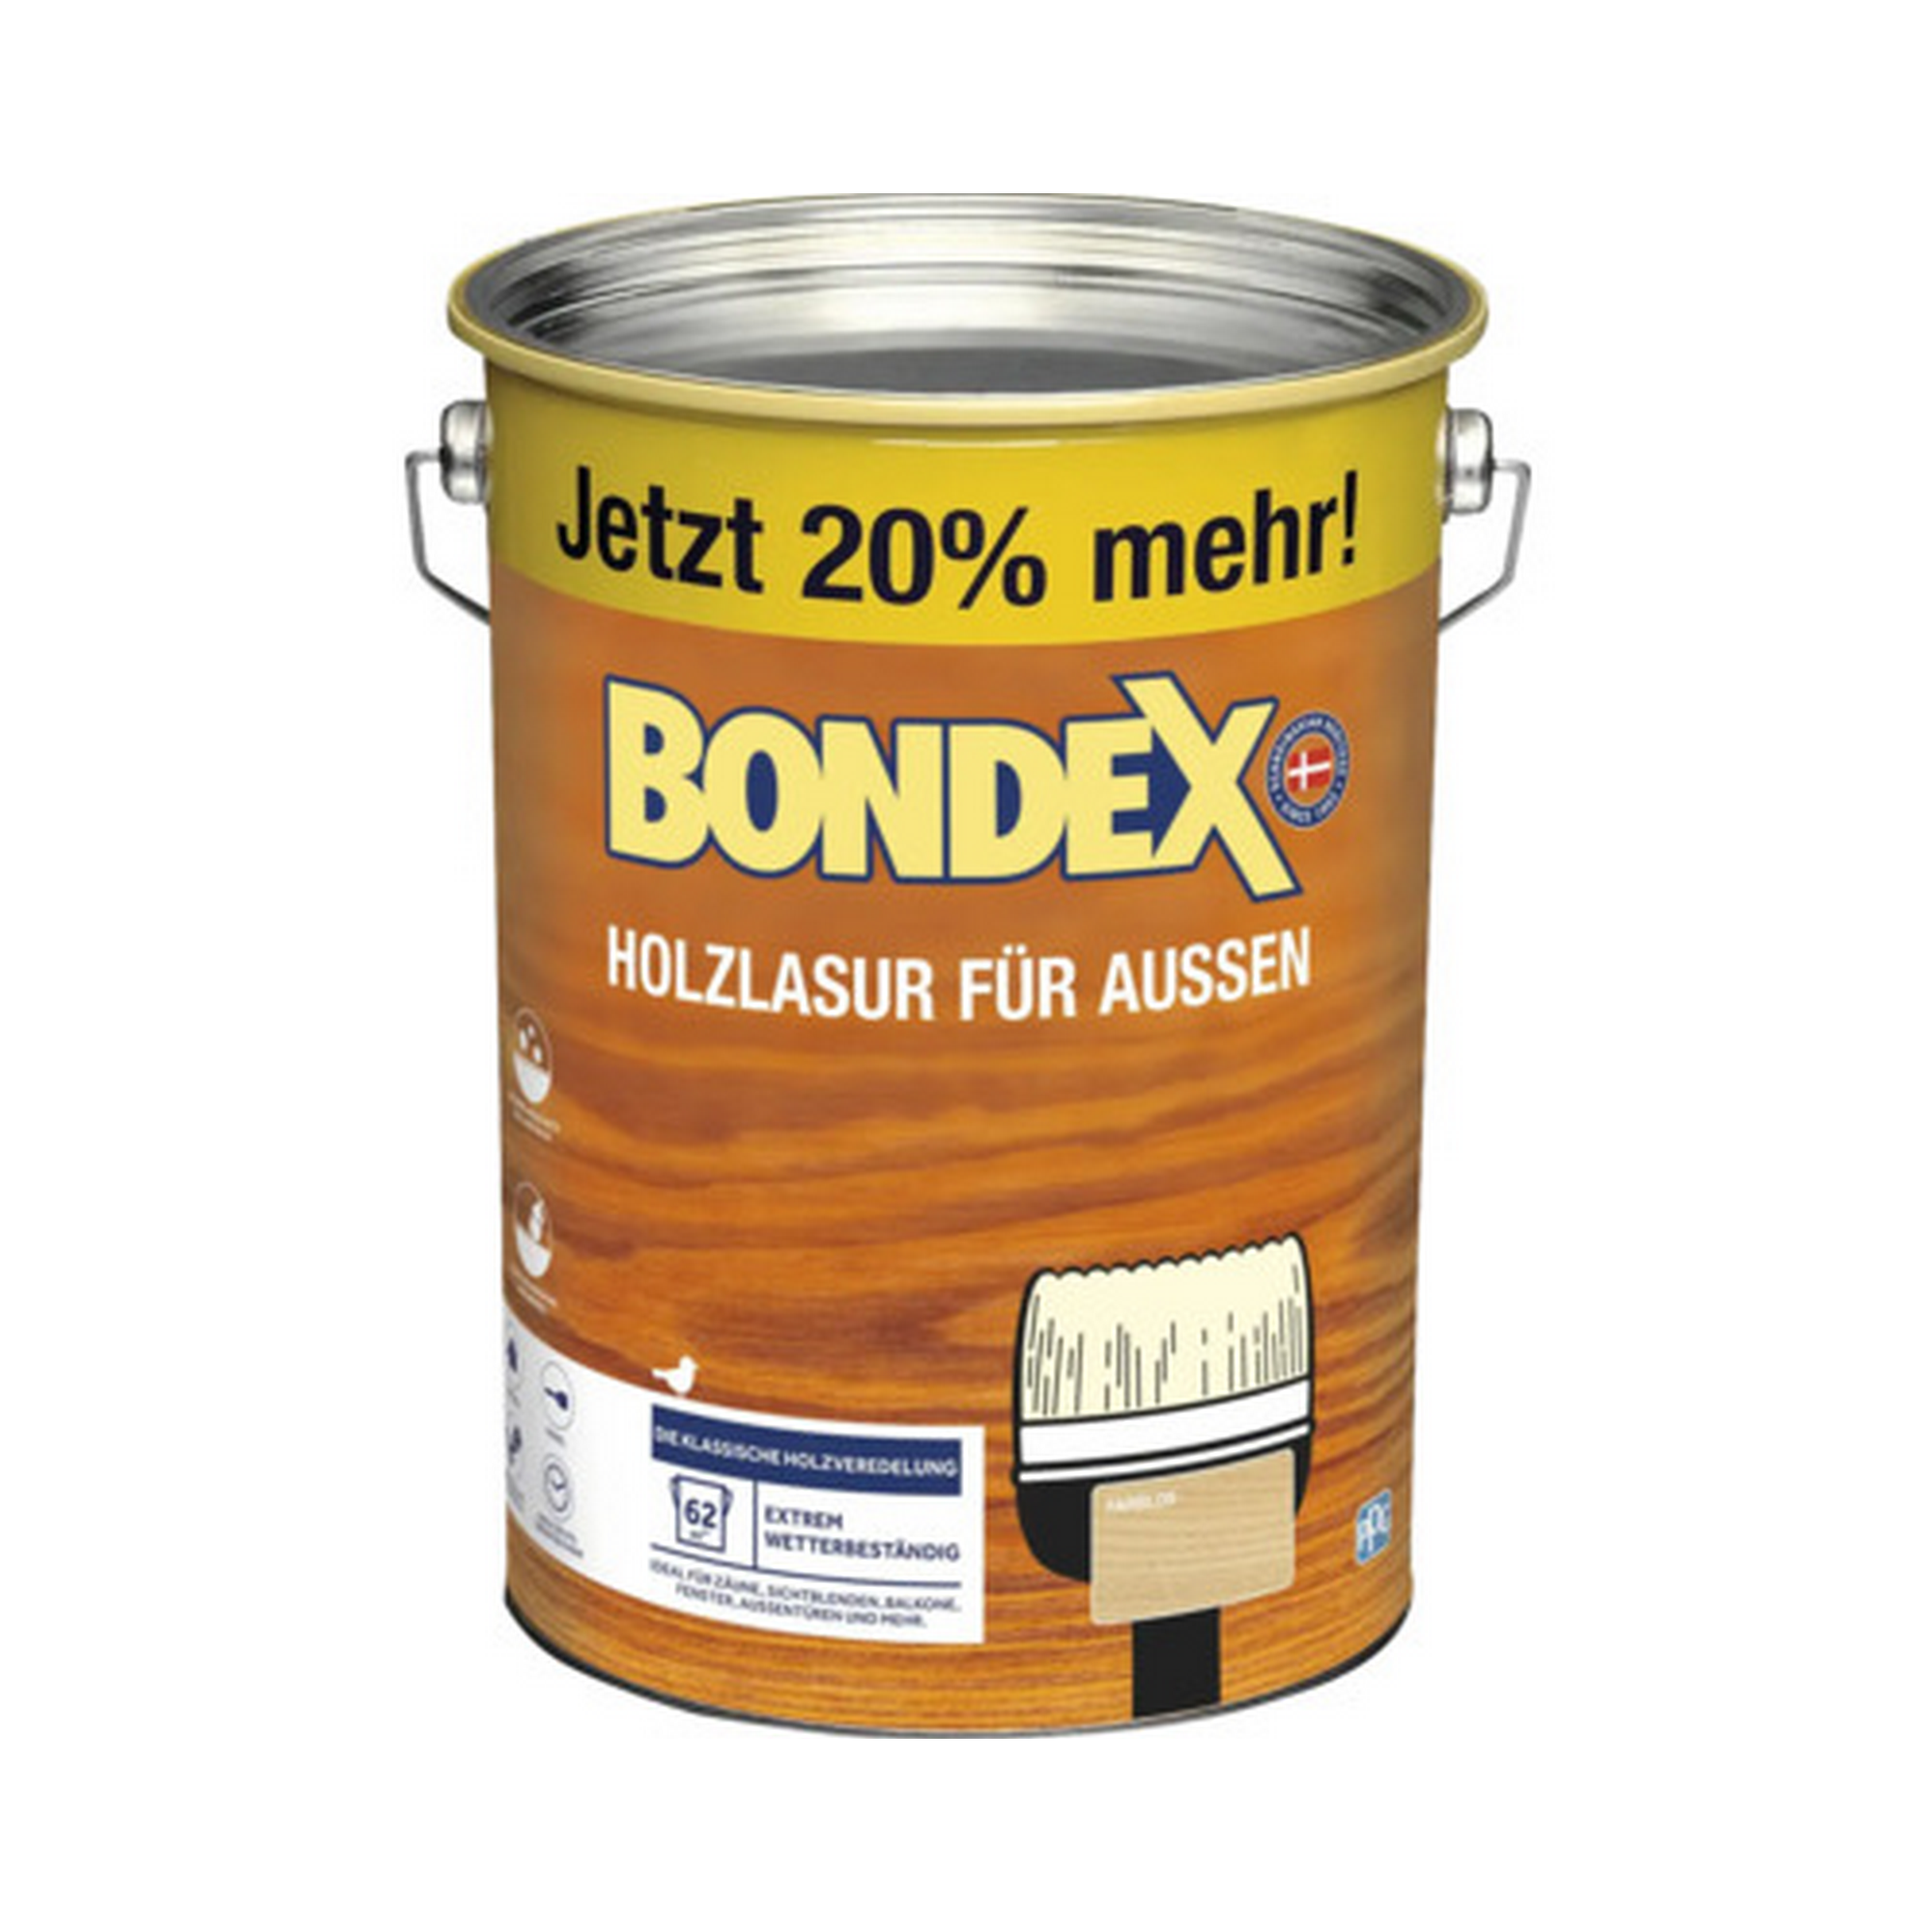 Bondex Holzlasur transparent 4,8 l